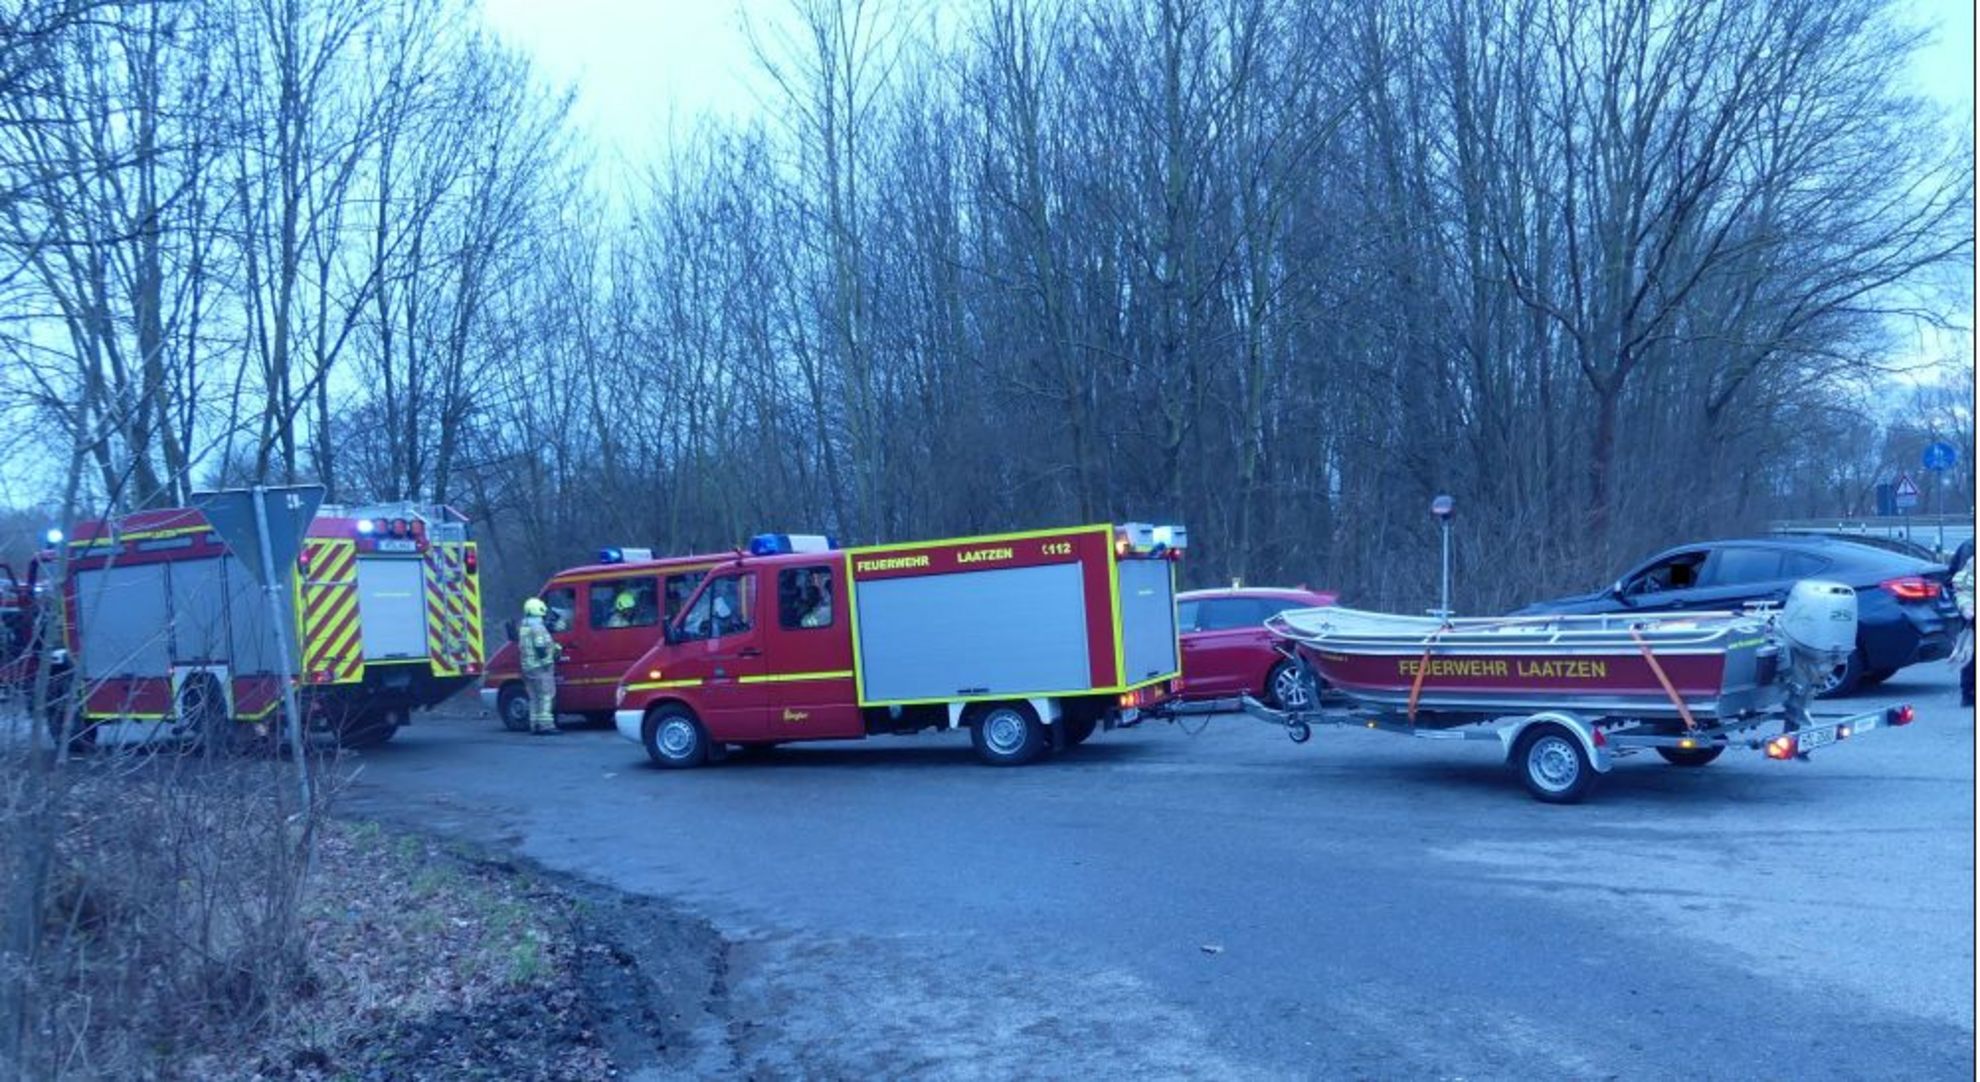 Weißwasser: Trebendorf lässt Feuerwehrauto generalüberholen